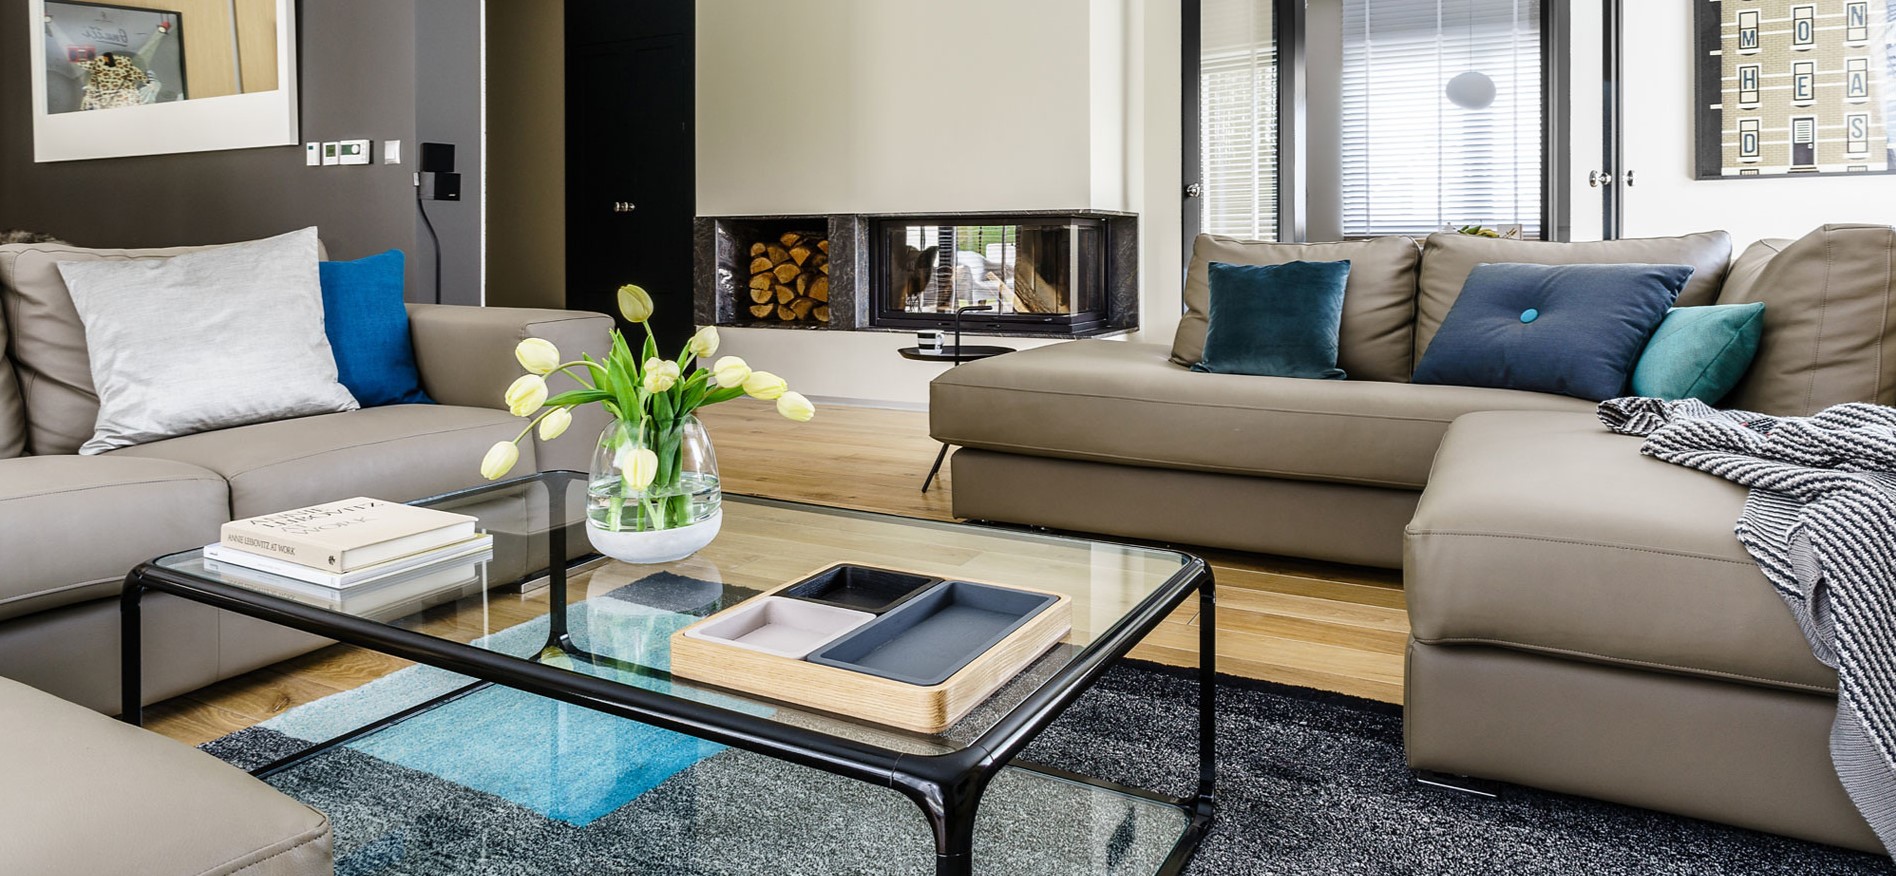 Кожаные диваны бежевого цвета позволяют создать уютную зону отдыха в гостиной